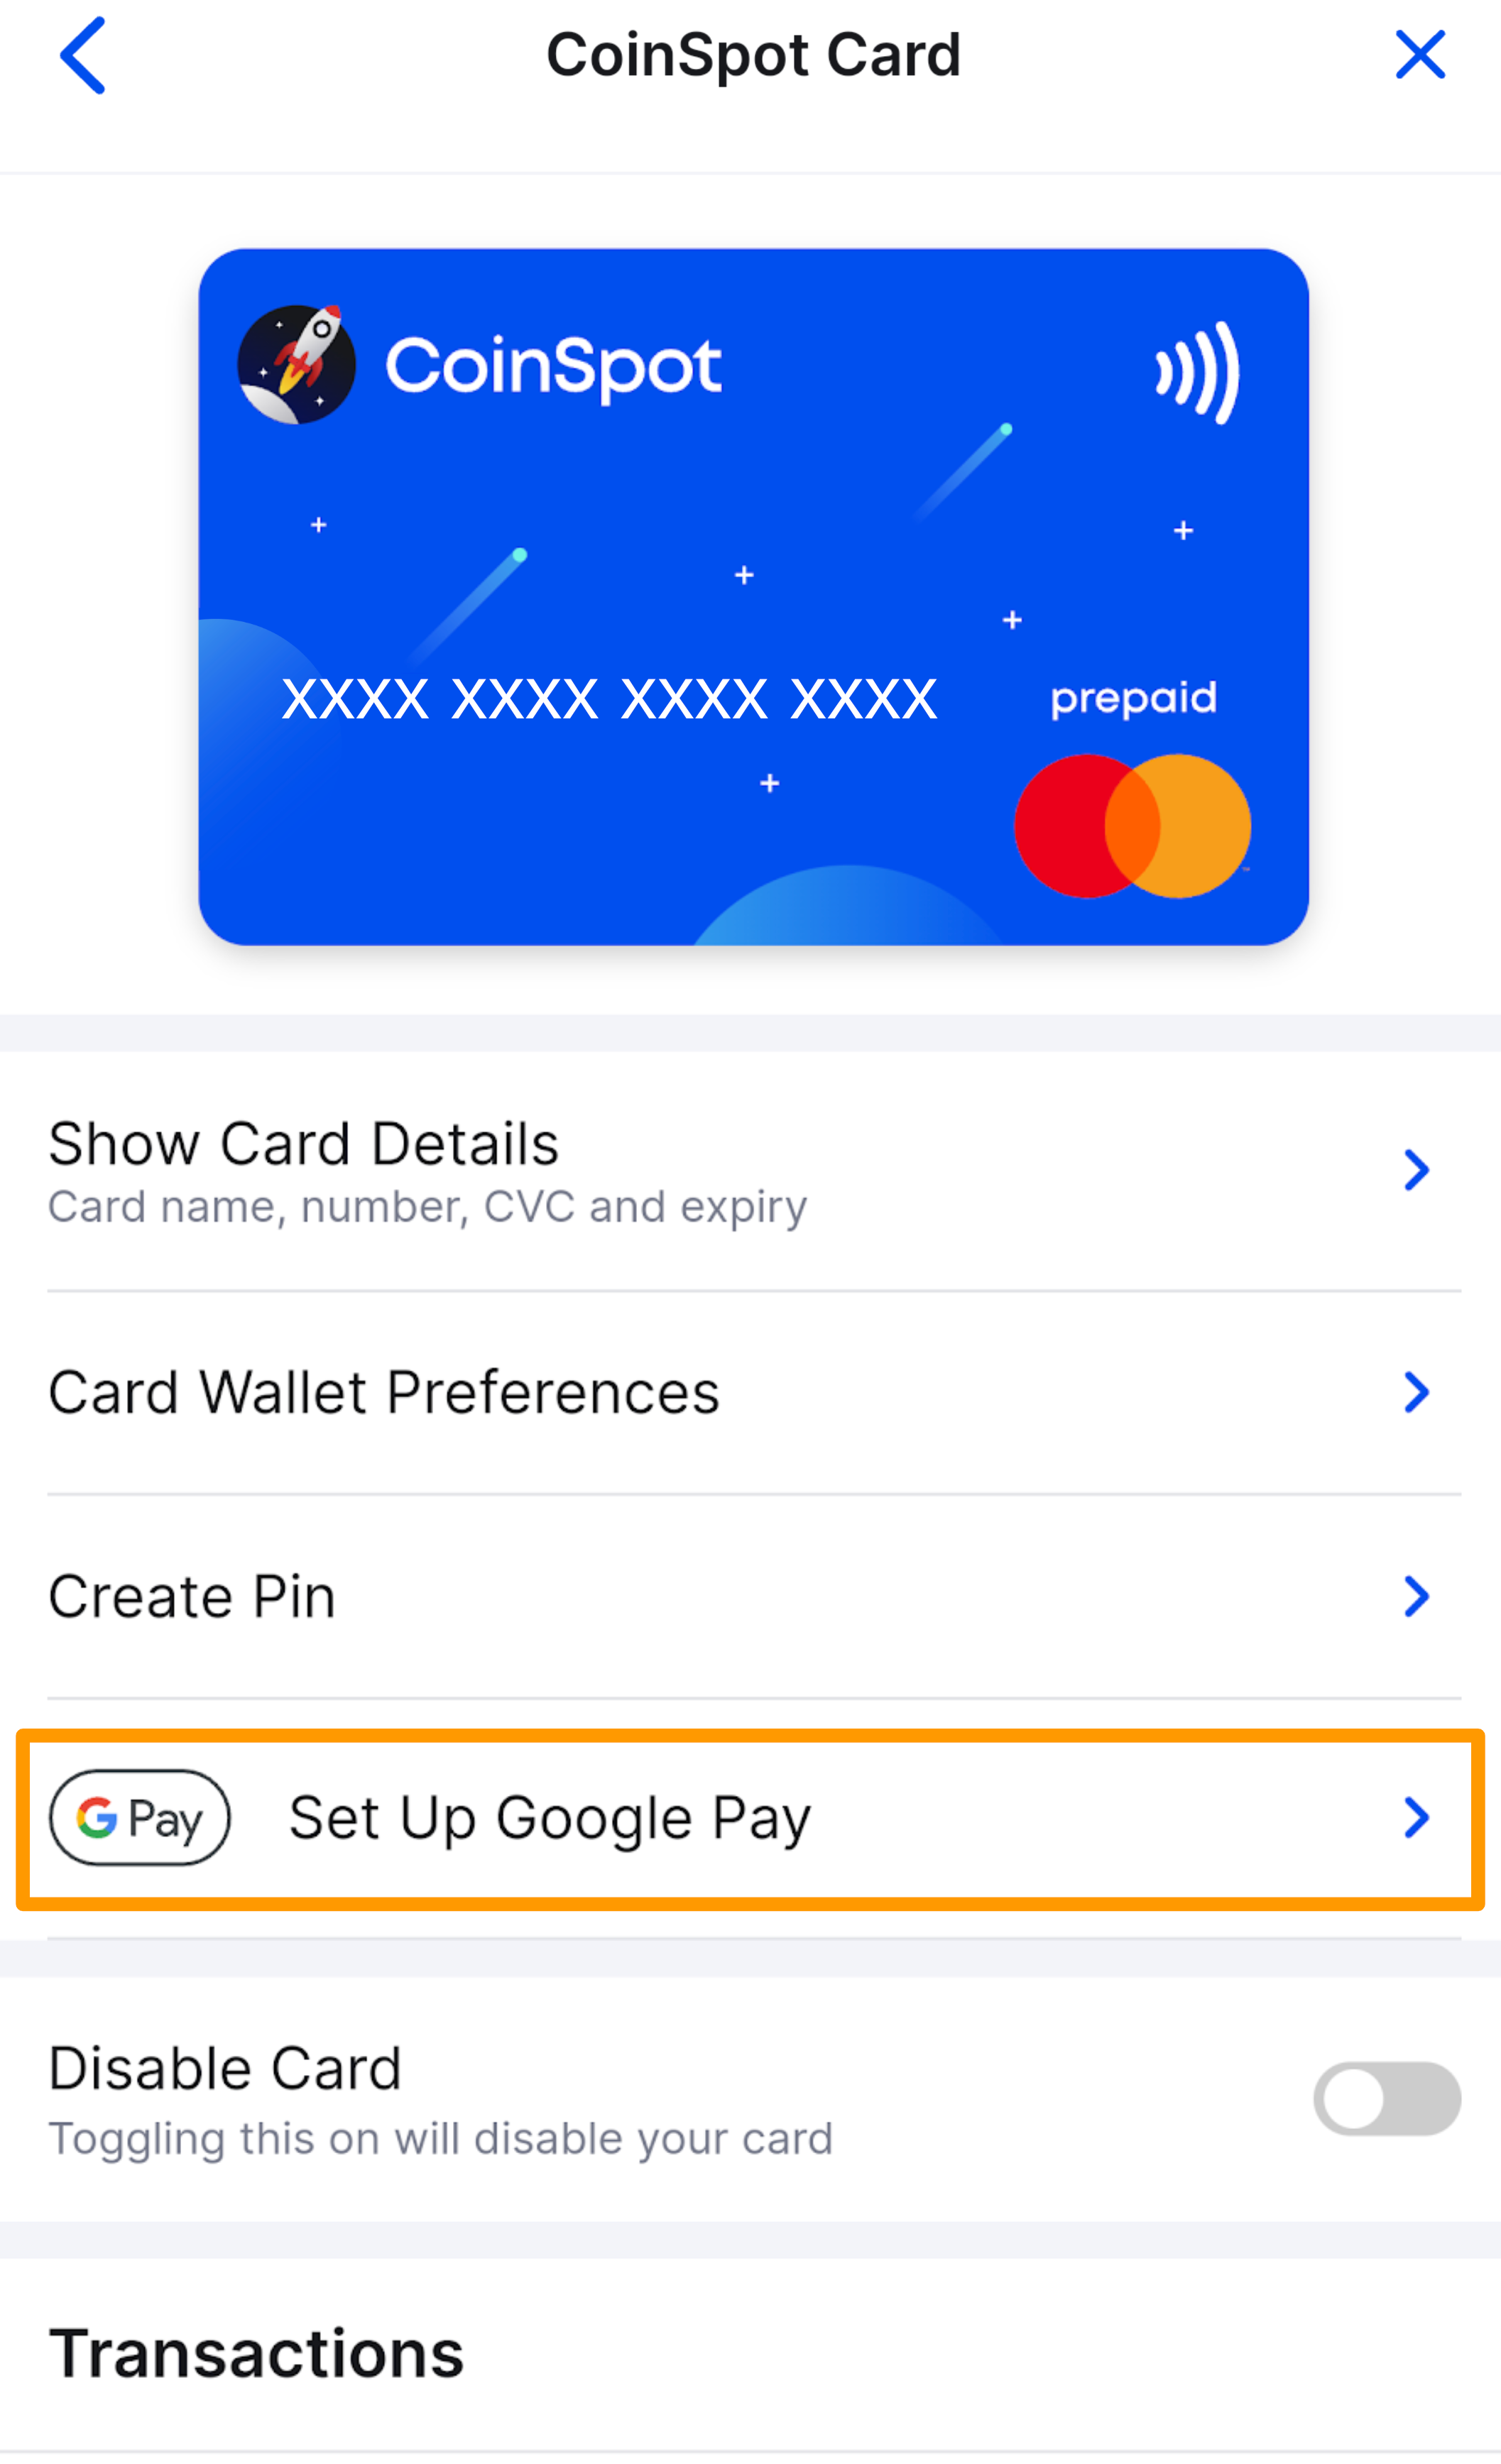 CS_Card_-_Google_Pay_-_Set_up_Google_Pay.png